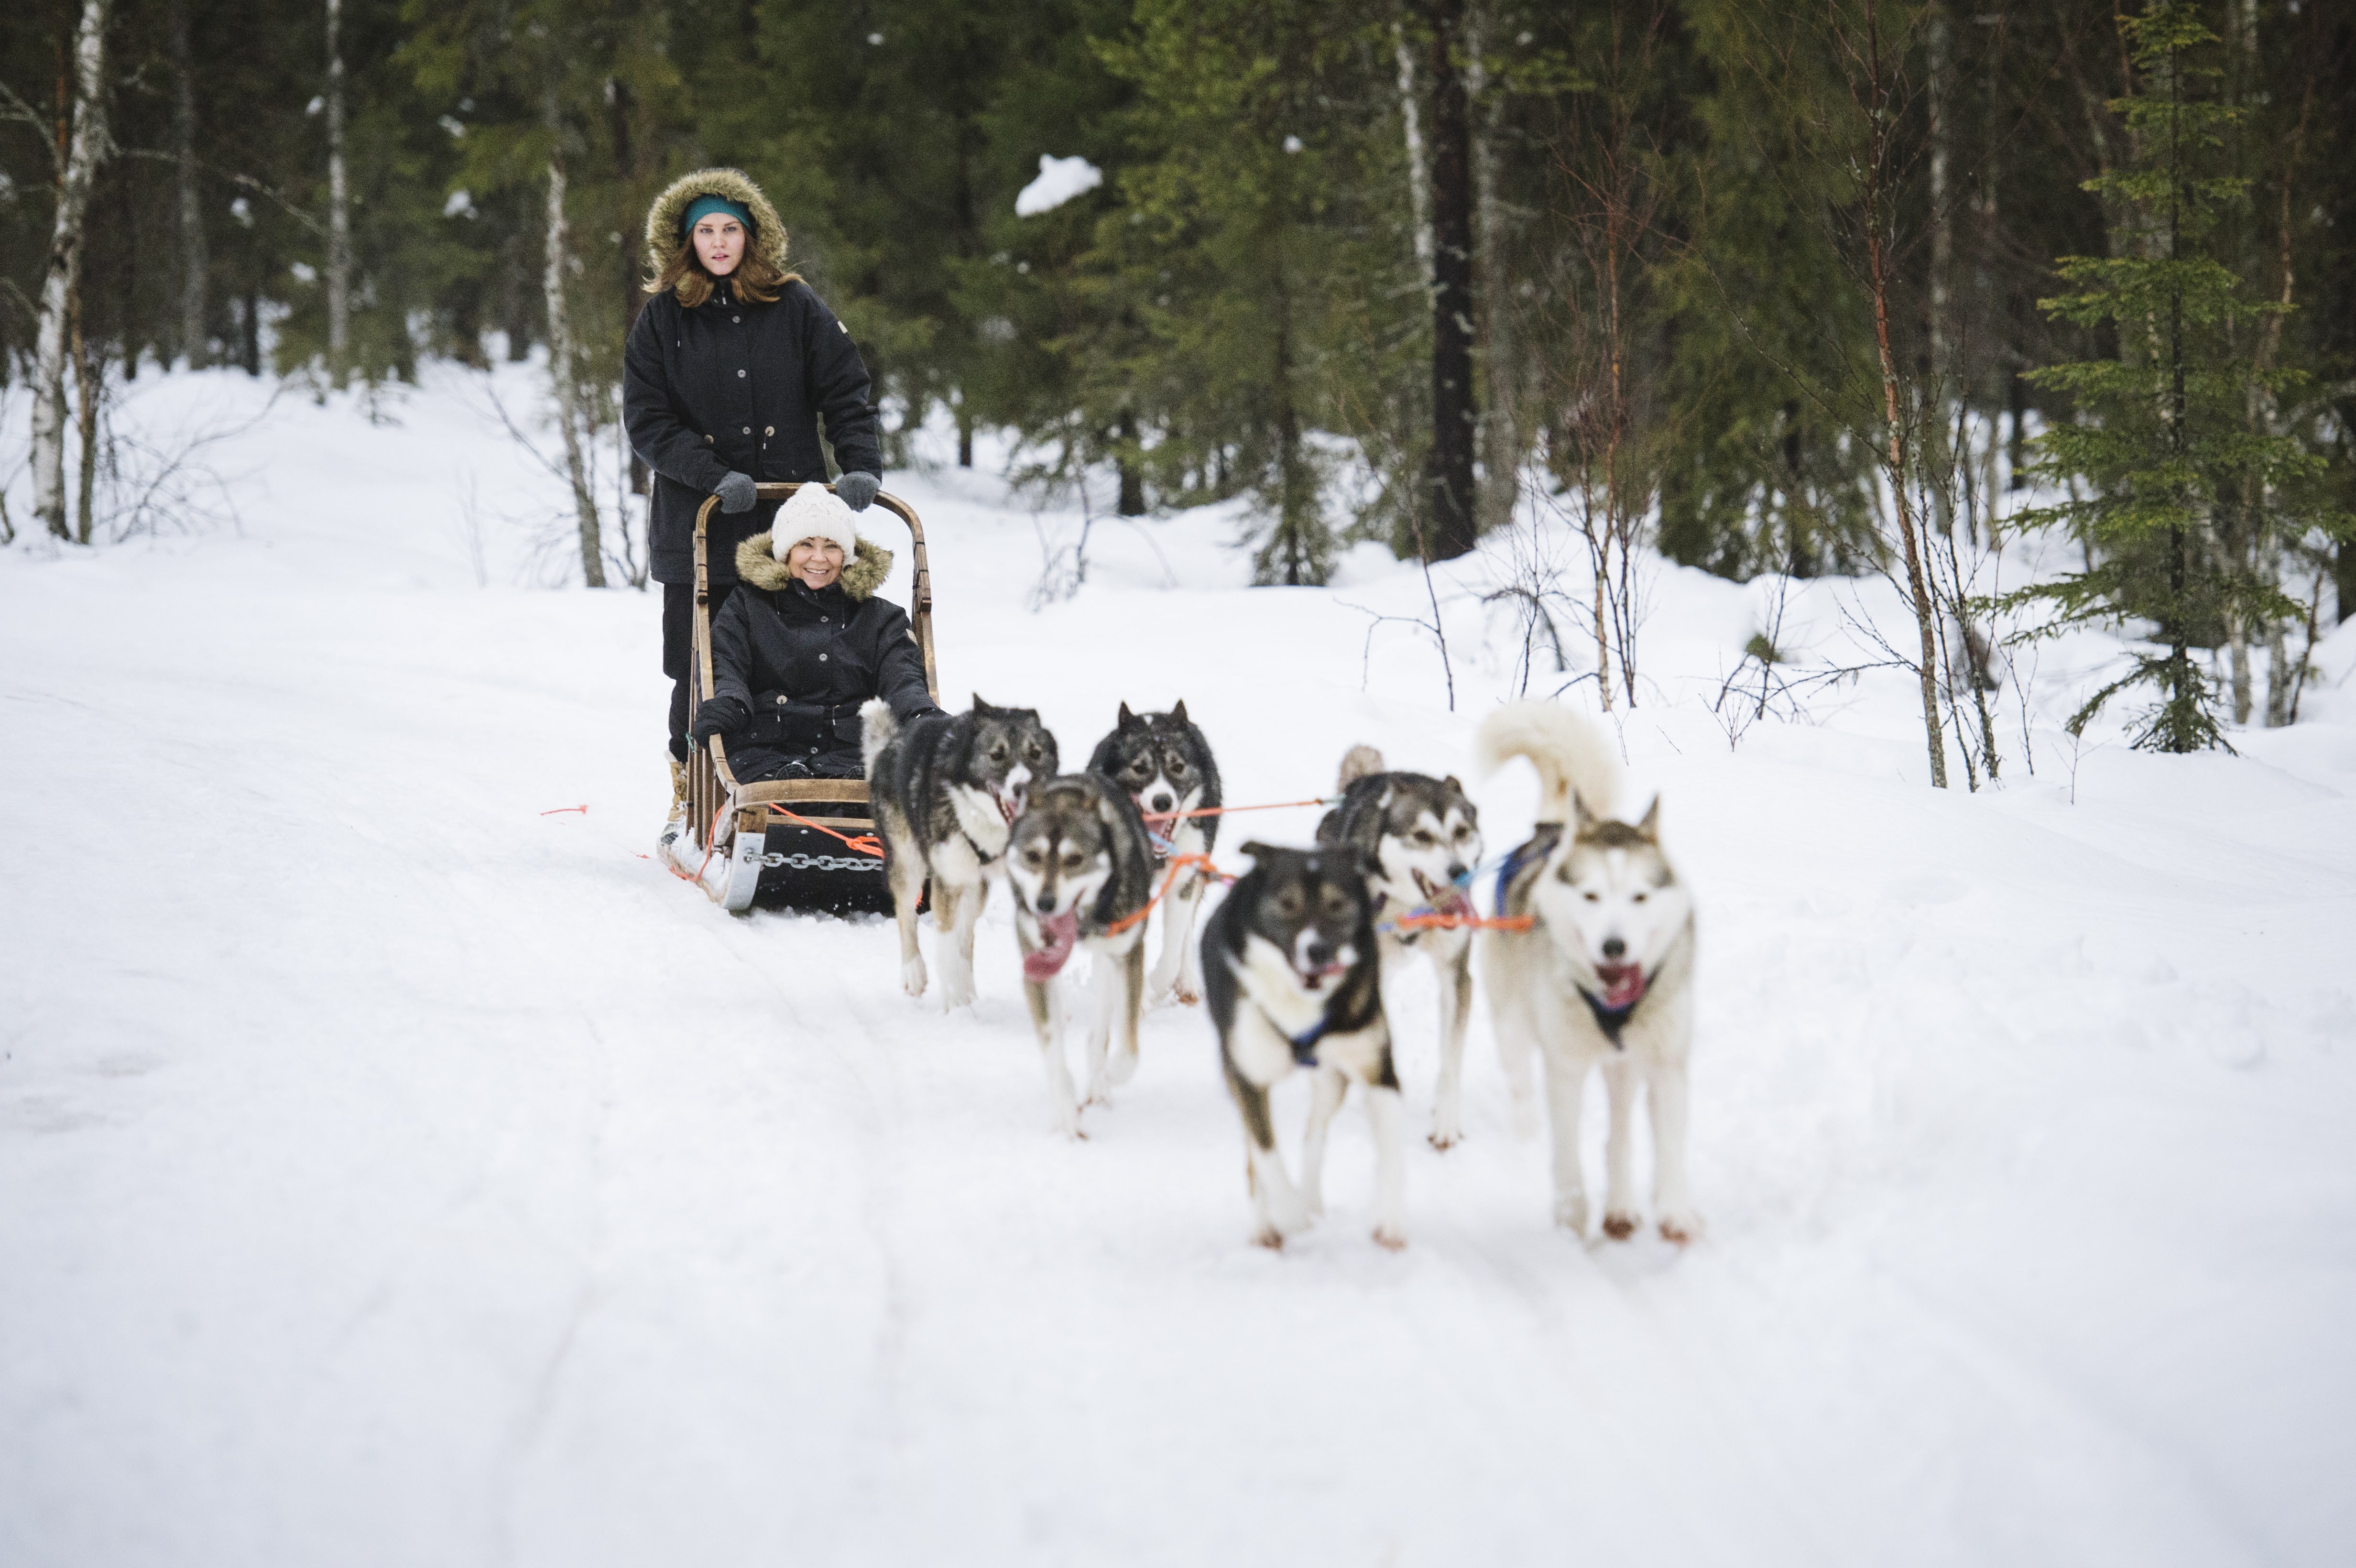 Pour les fêtes de fin d'année, Nortours propose des séjours en Laponie finlandaise. - DR Juho Kuva